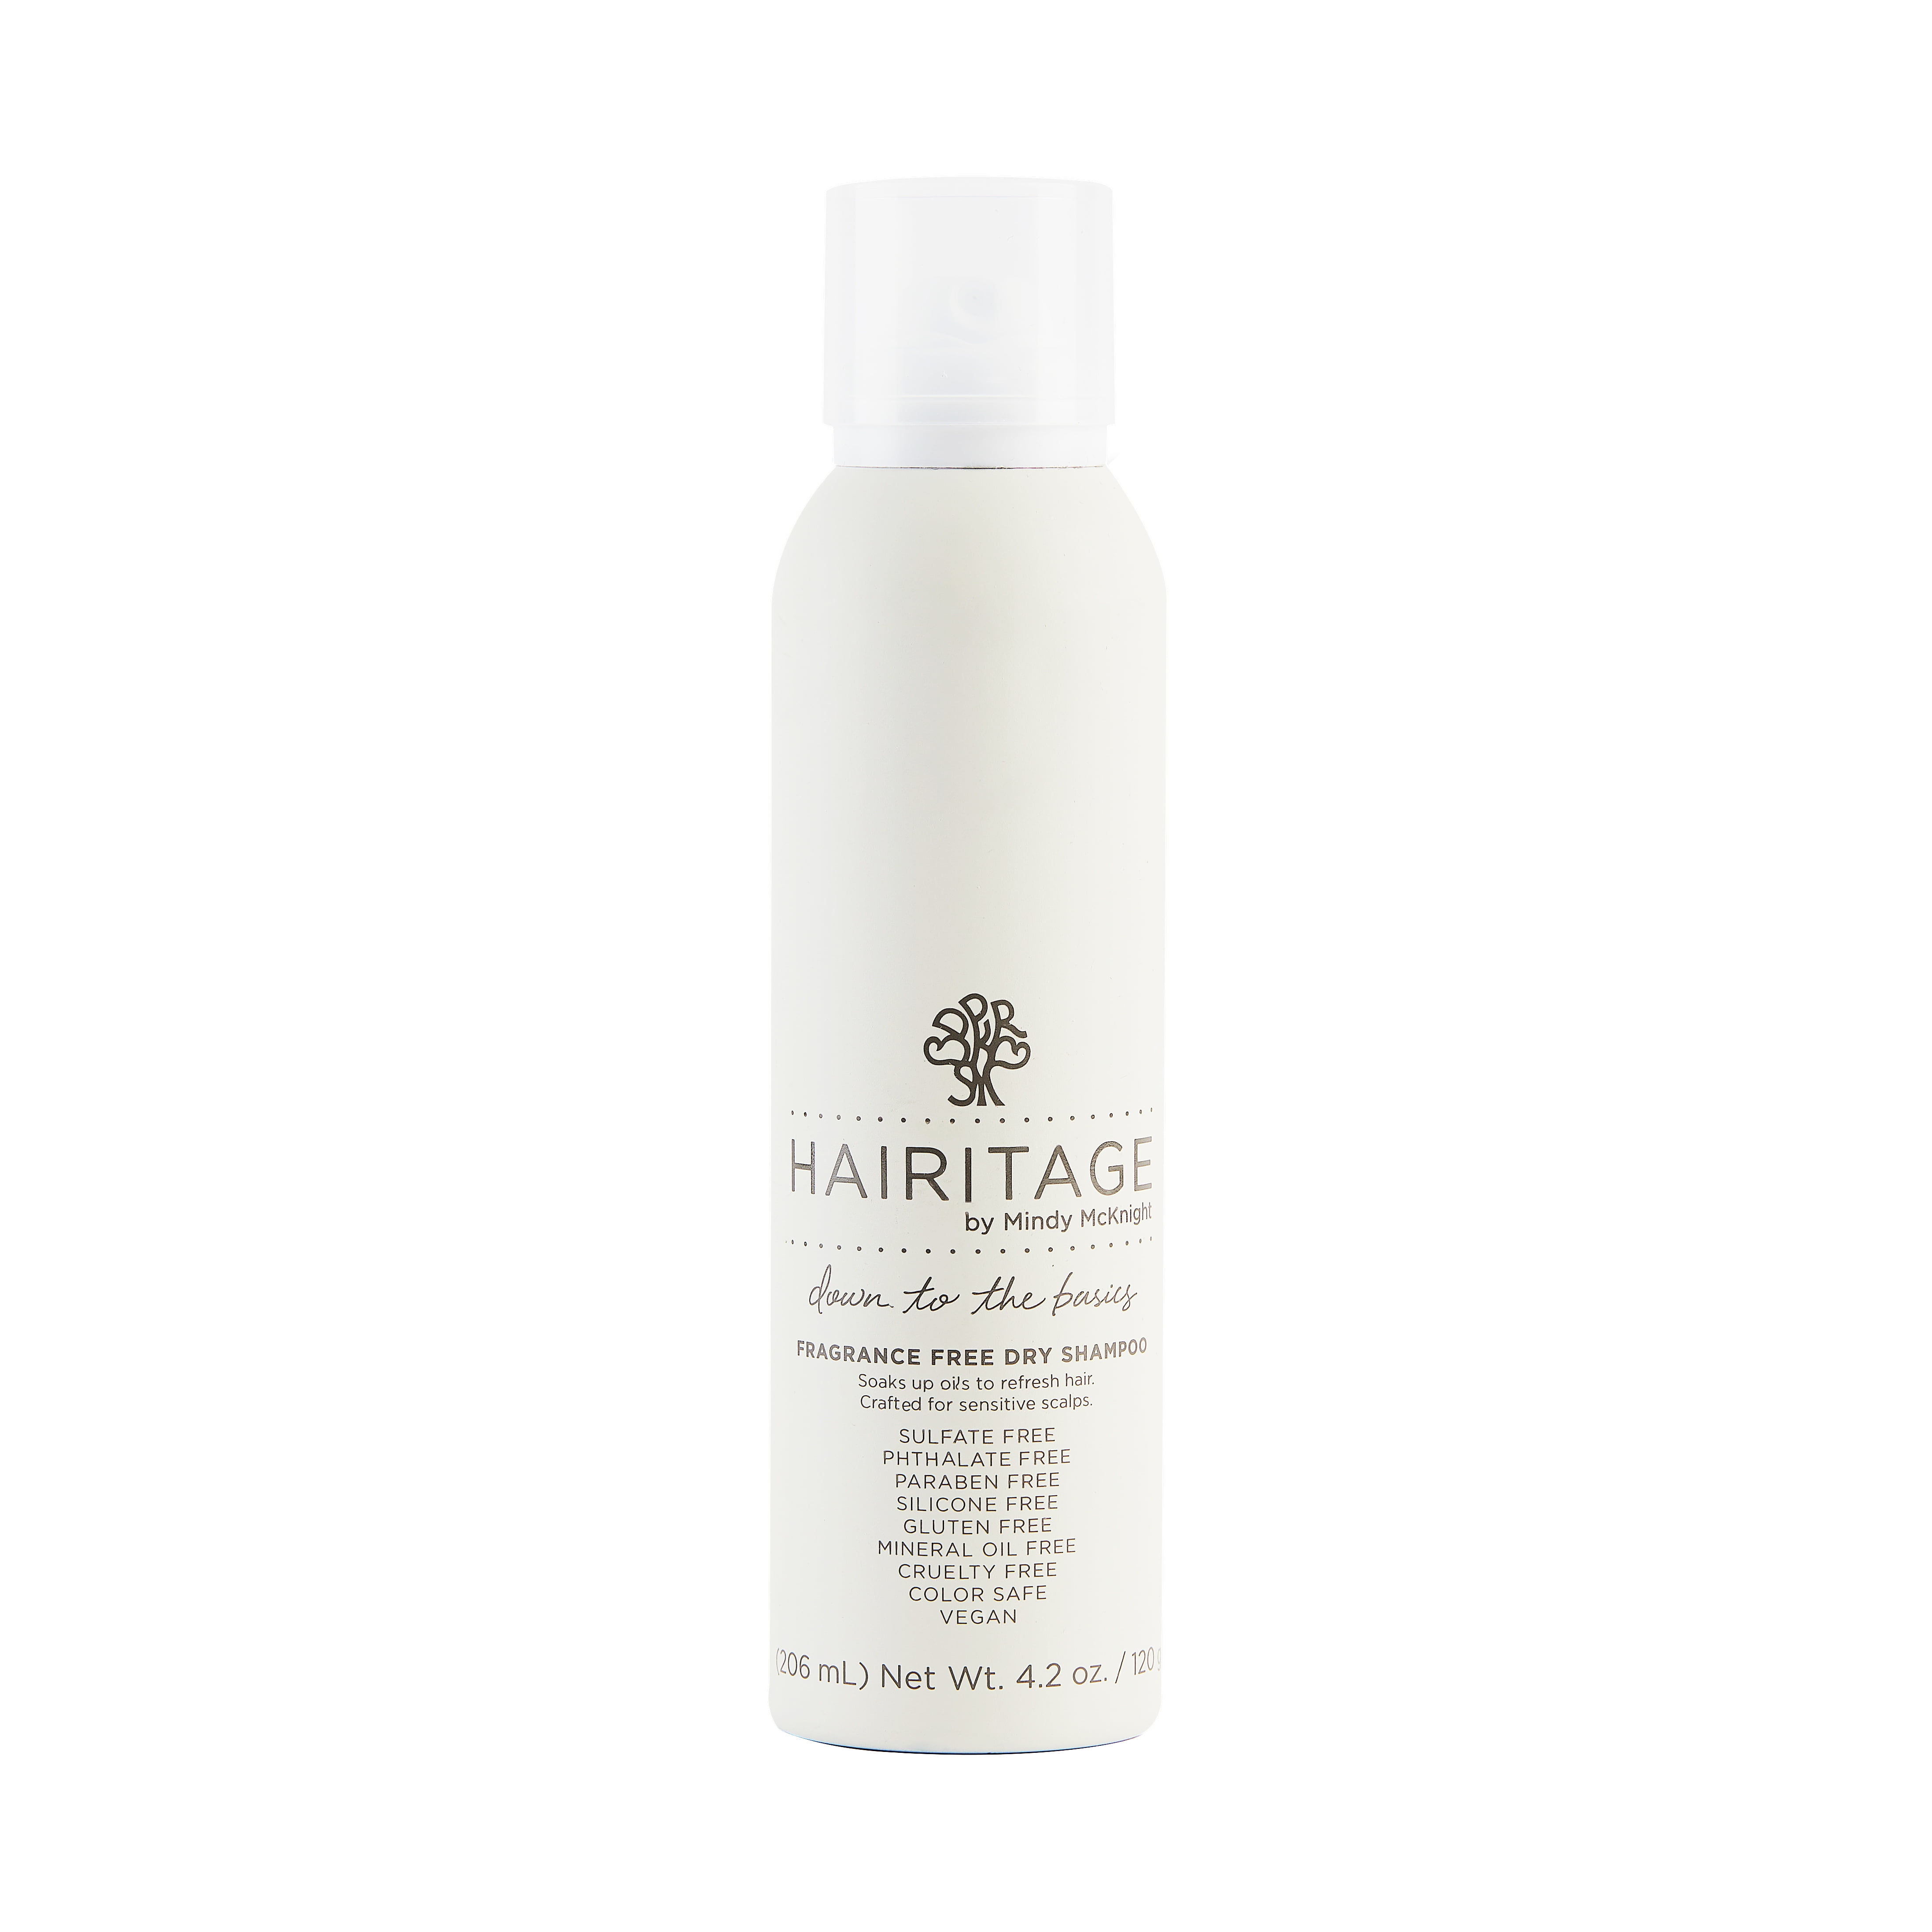 Hairitage Down to the Basics Dry Shampoo Spray with Rice Protein | Volumizer for Women & Men, 4.2 oz